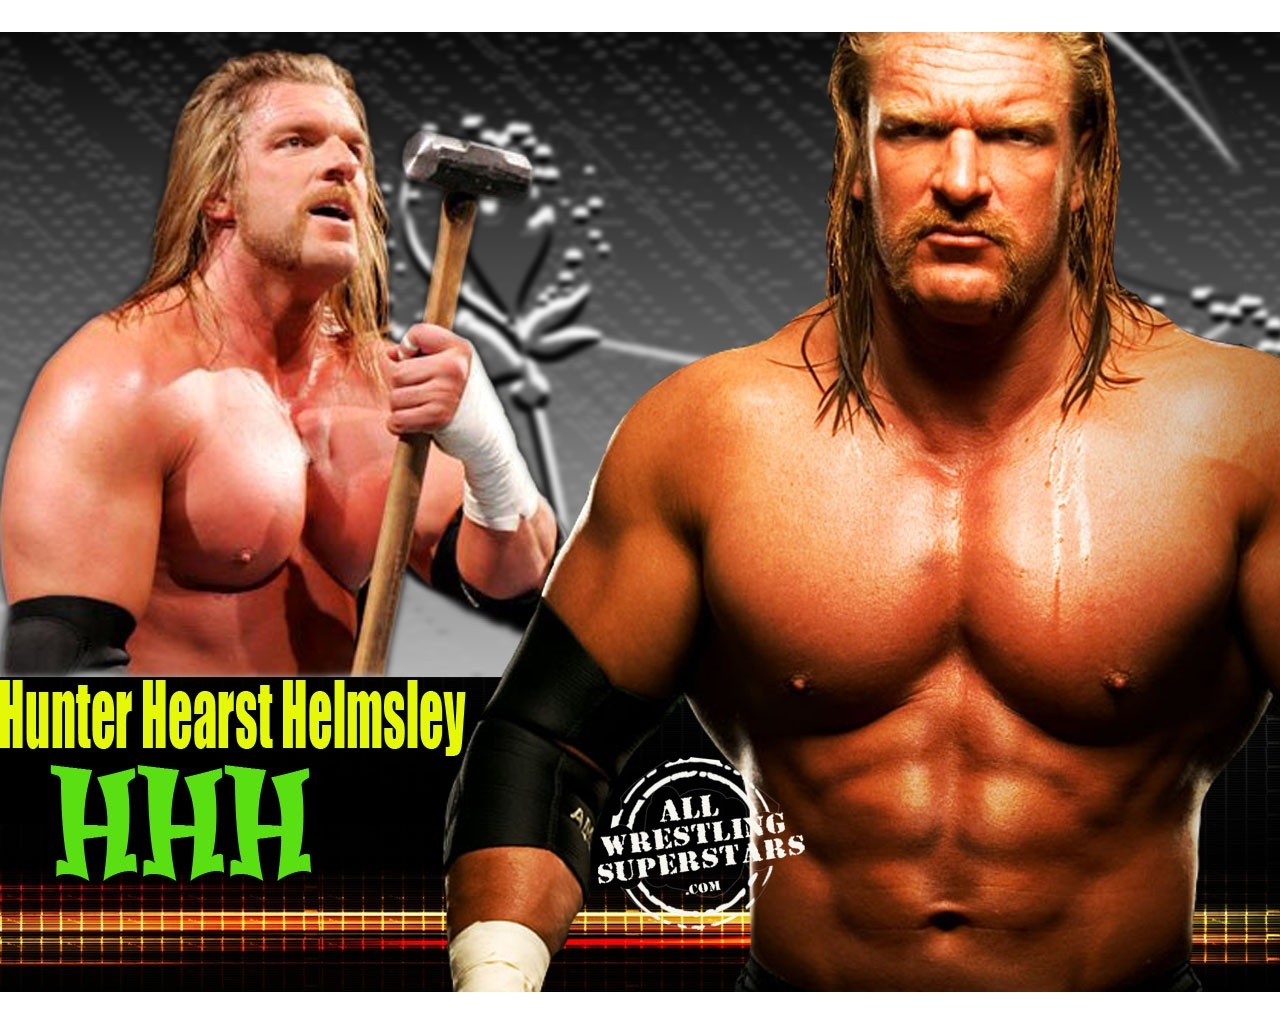 People 1280x1024 men Triple H WWE wwf wrestler wrestling sledge hammer sport shirtless